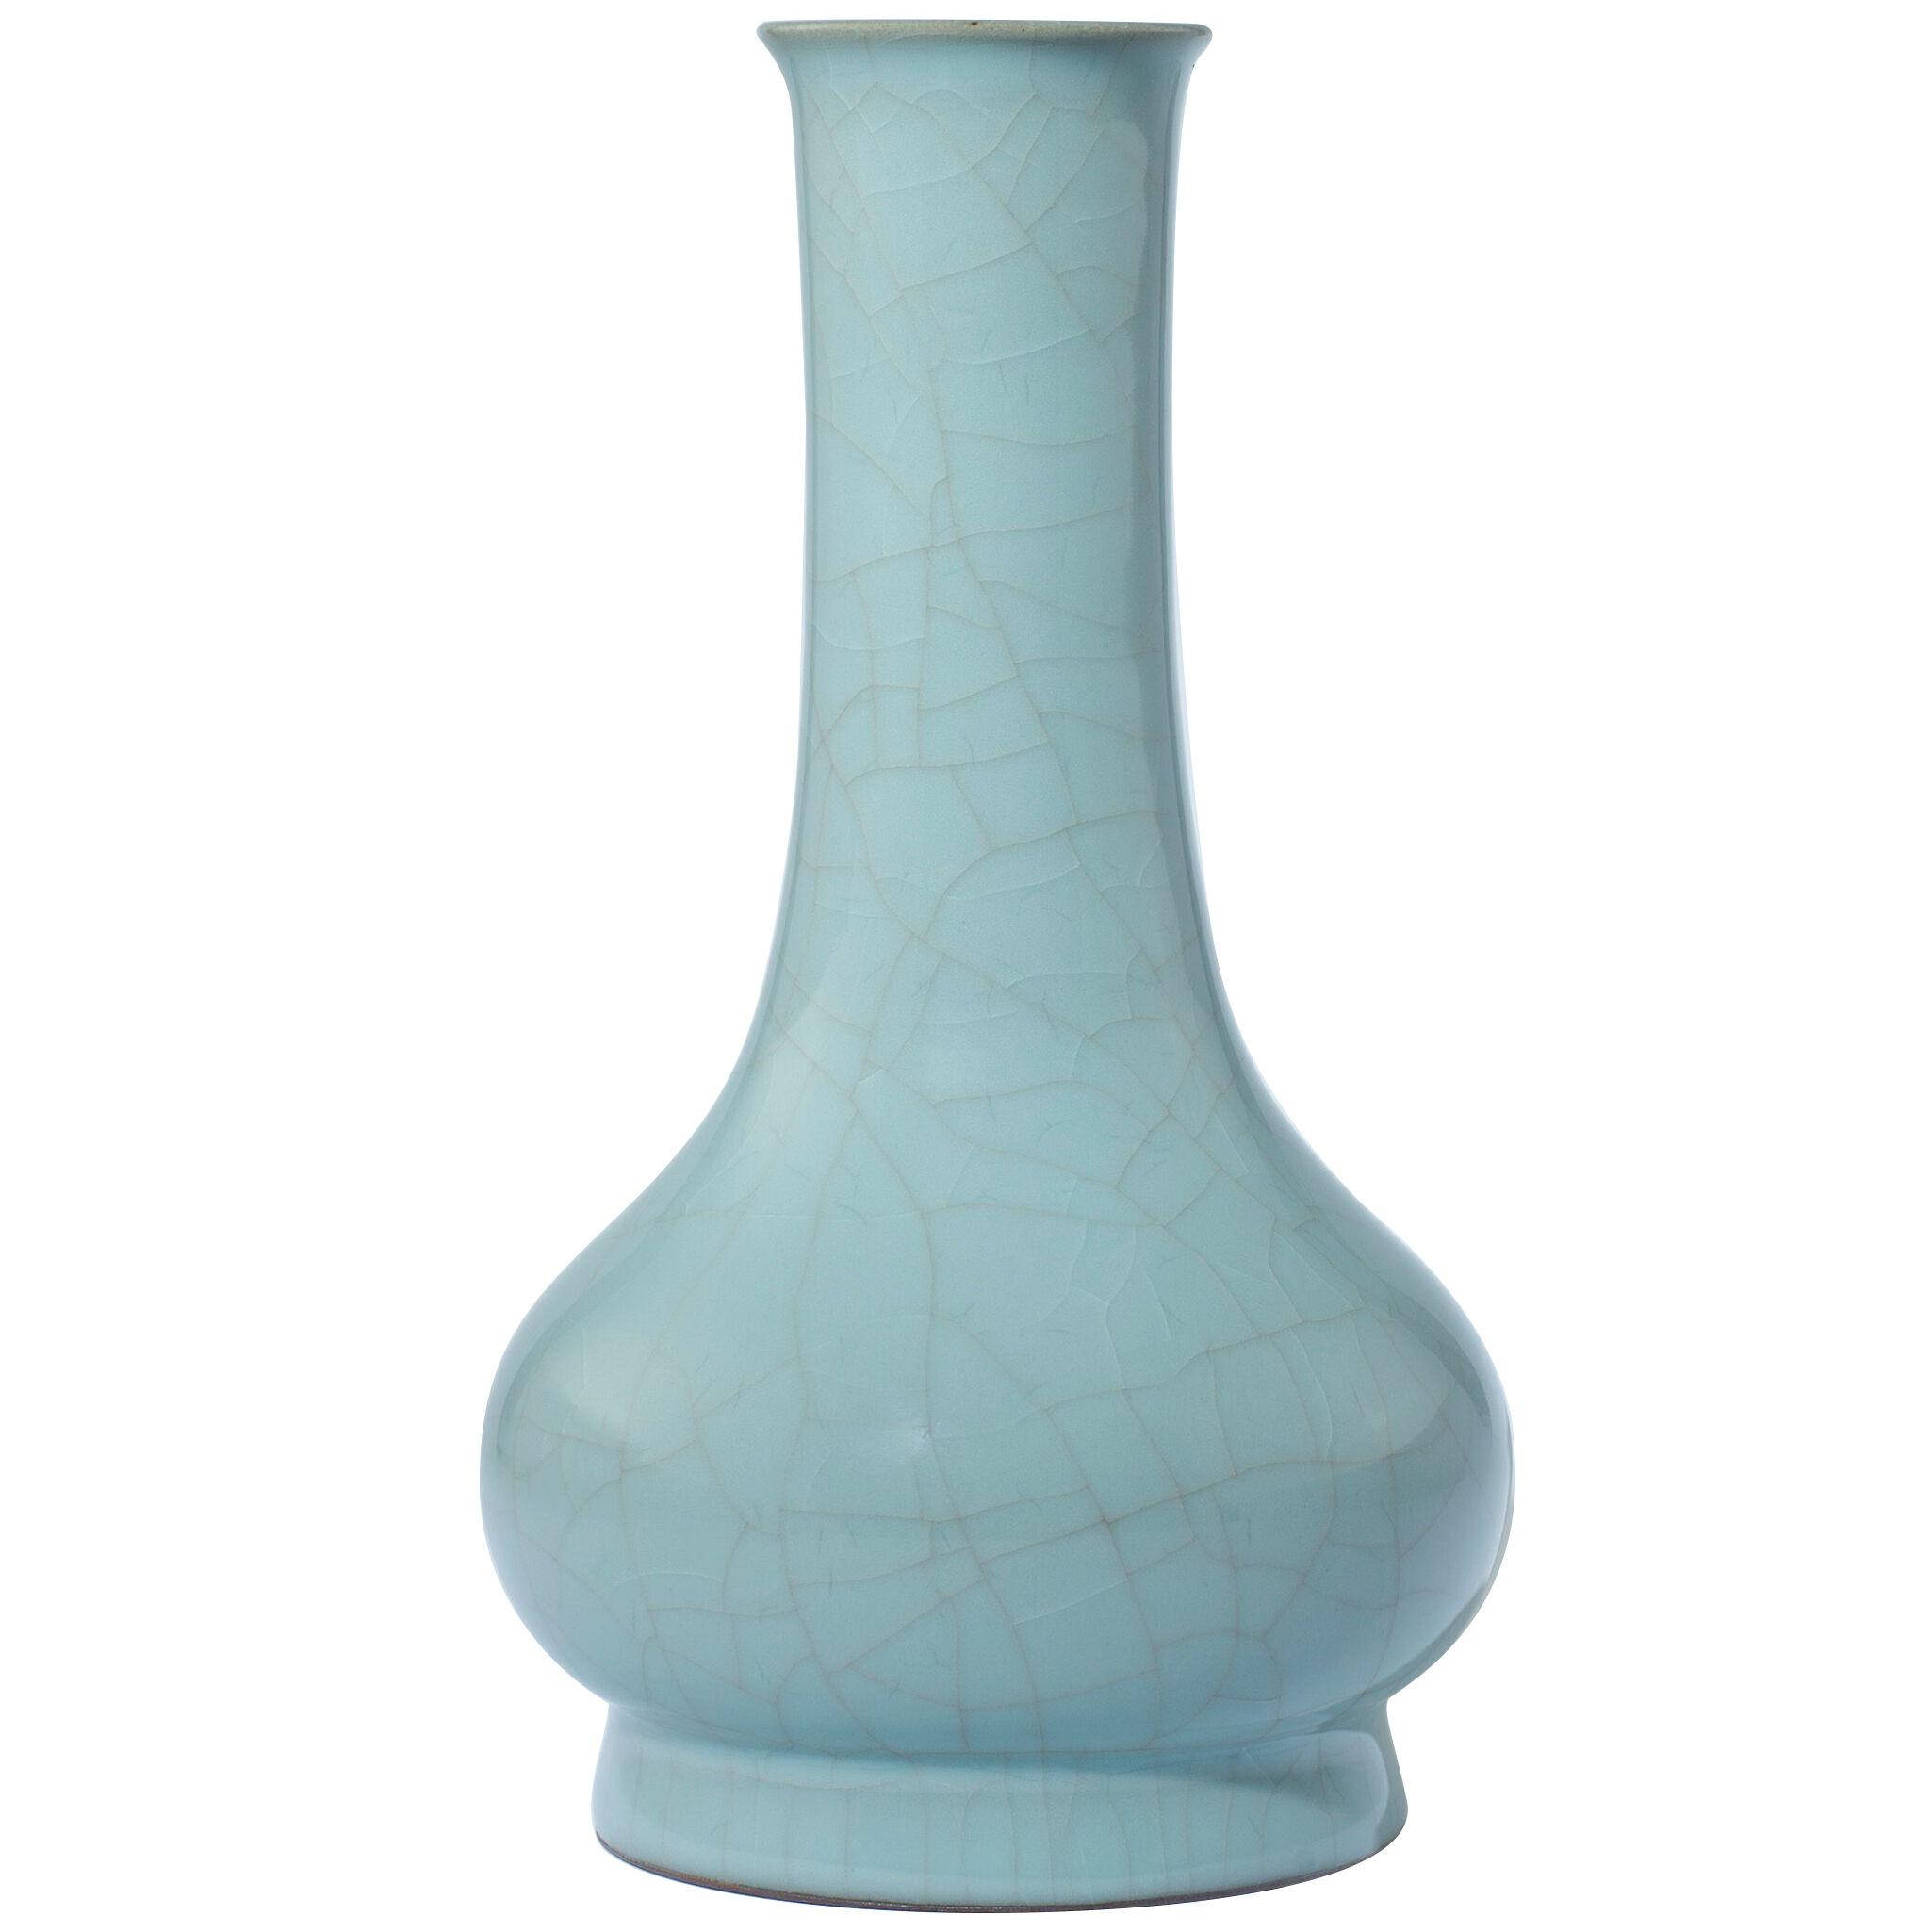 Japanese porcelain celadon lavender crackle glazed flower vase.